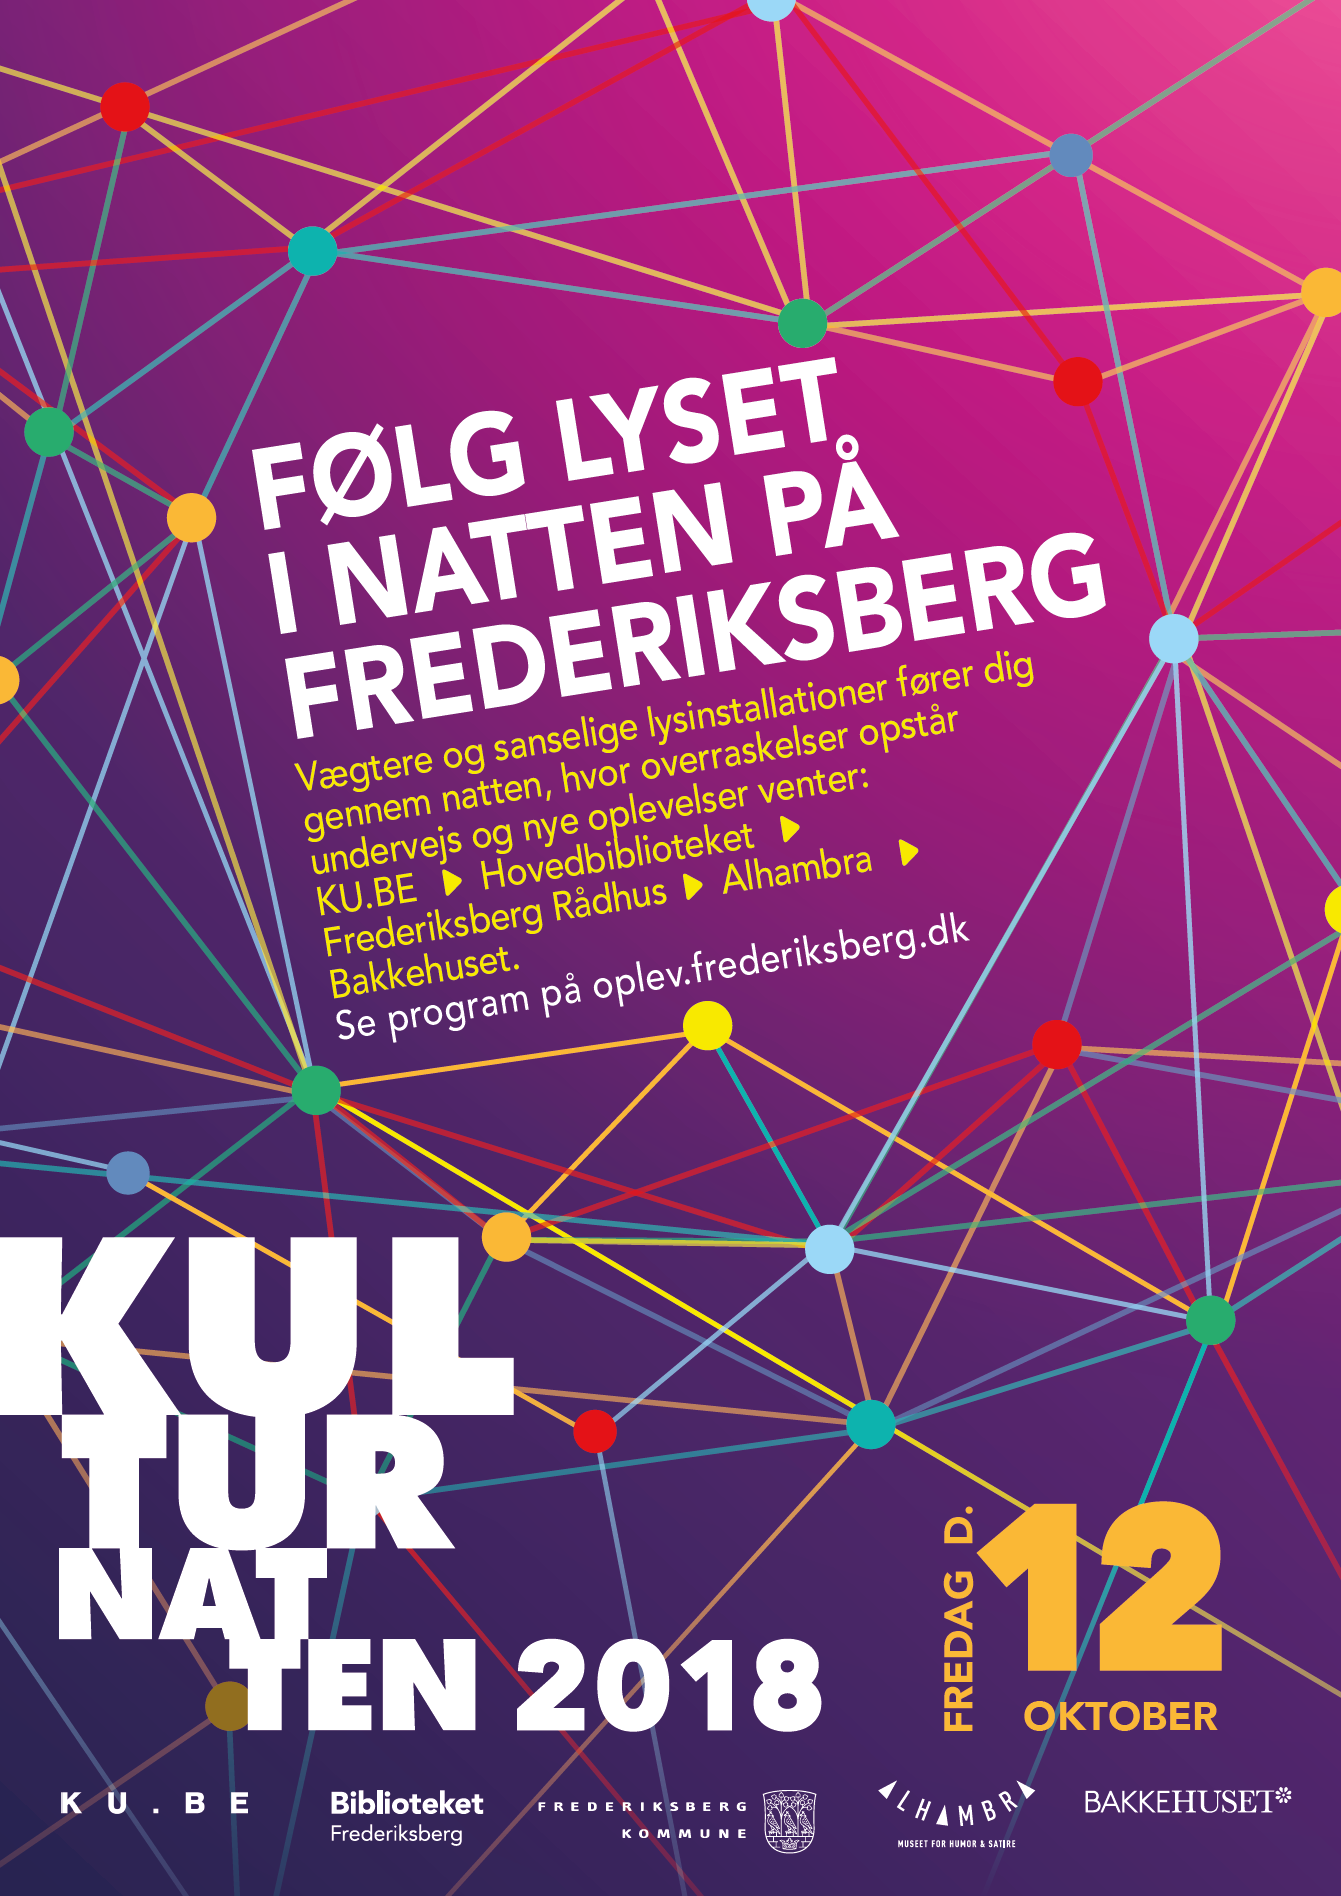 Følg lyset ud i Kulturnatten på Frederiksberg | Frederiksberg fkb.dk